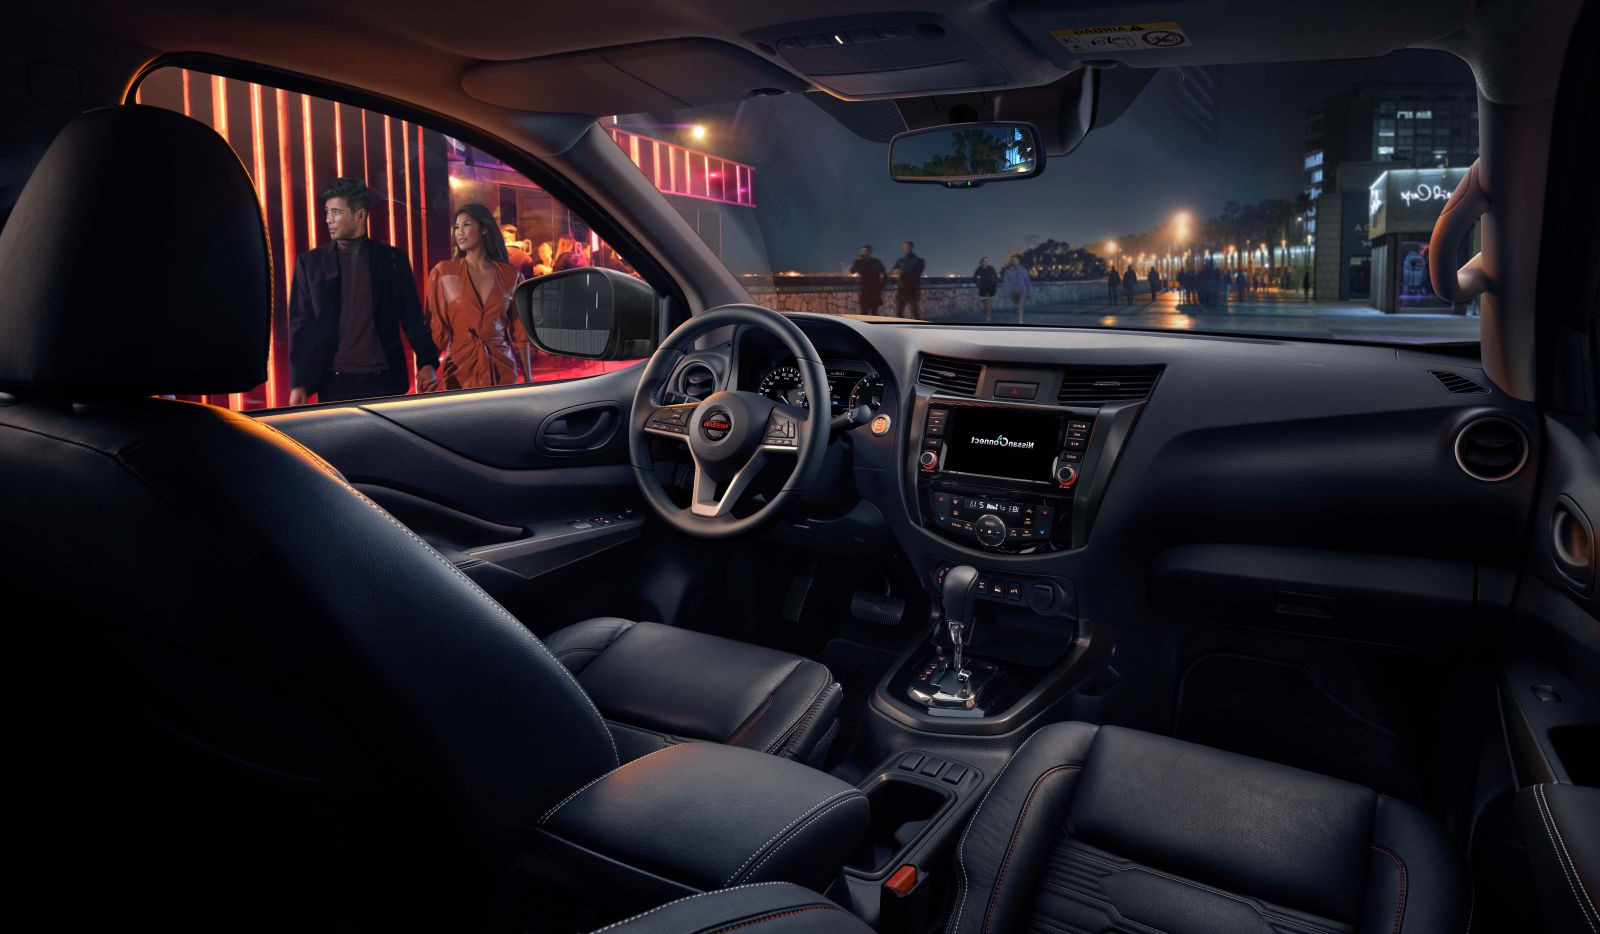 Khu vực đầu xe Nissan Navara nổi bật với cụm đèn pha đa bóng Bi-LED công nghệ Quad Projector.